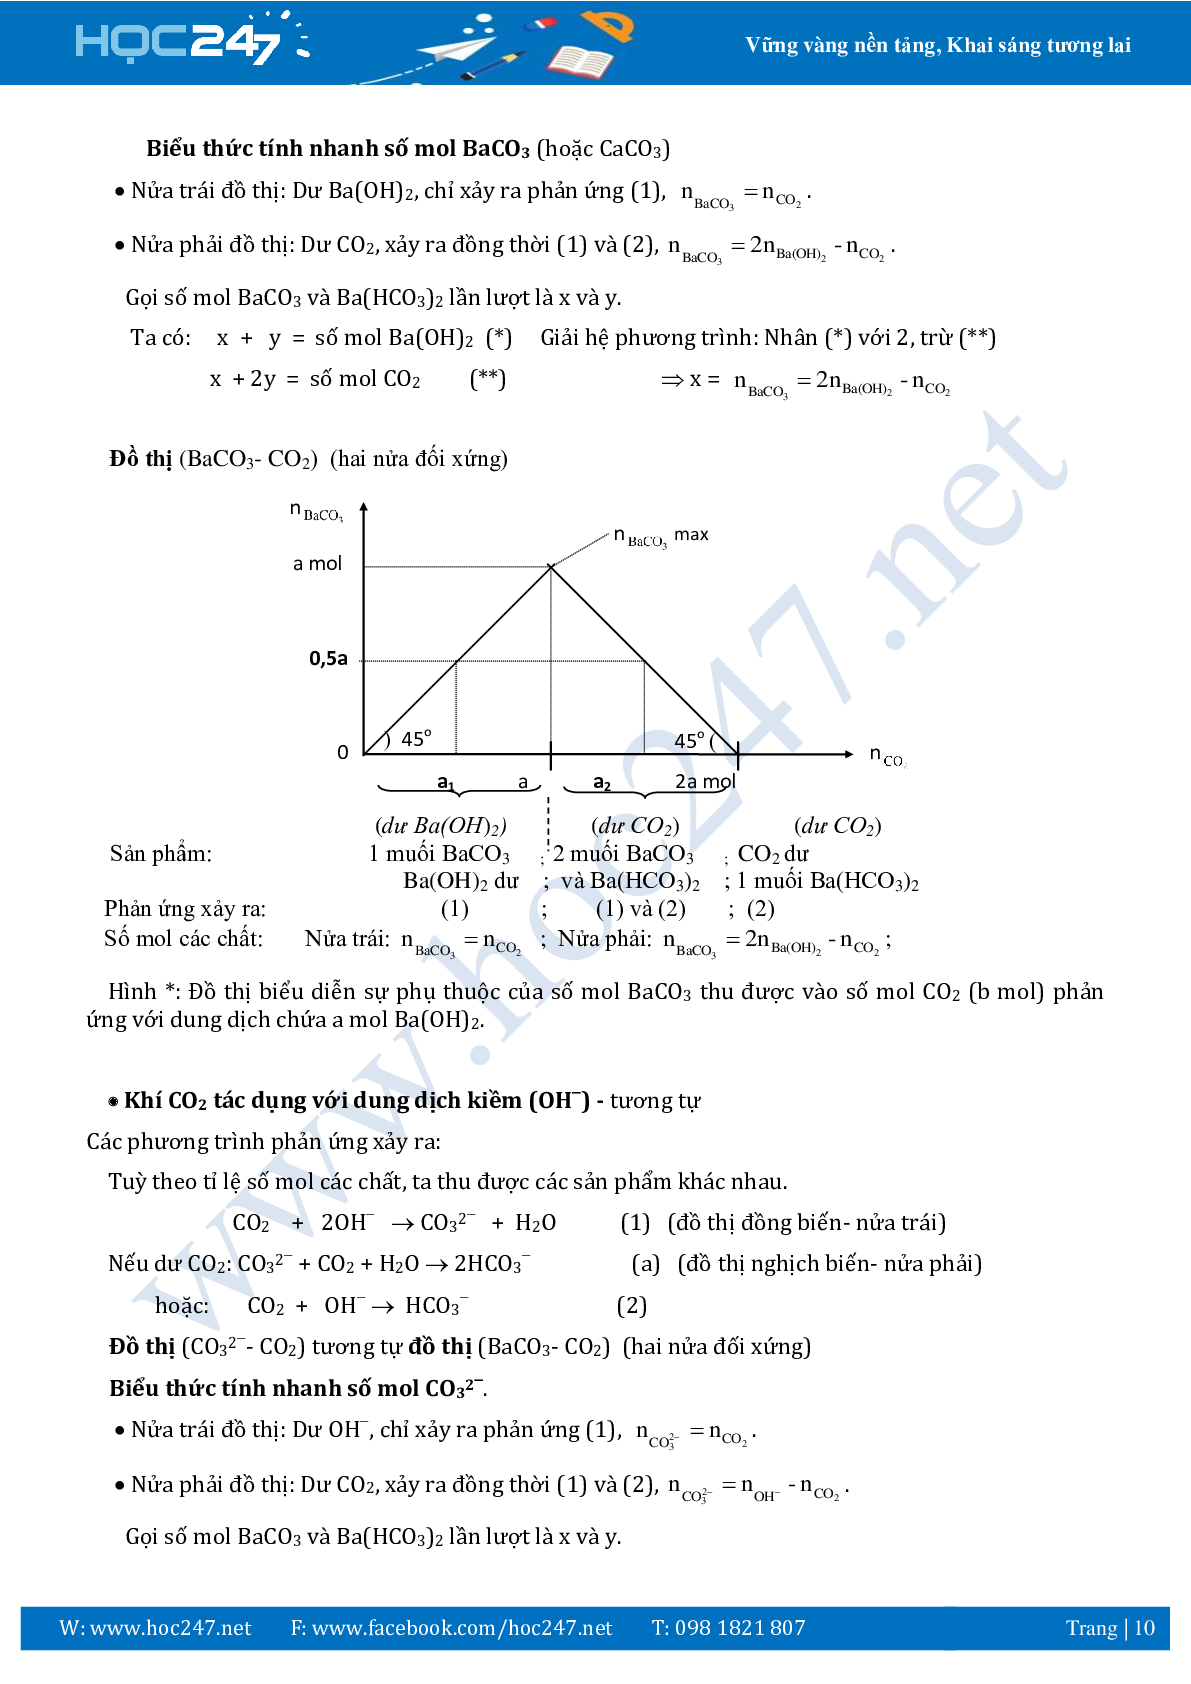 Chuyên đề sử dụng phương pháp đồ thị ôn thi THPTQG môn Hóa học (trang 10)